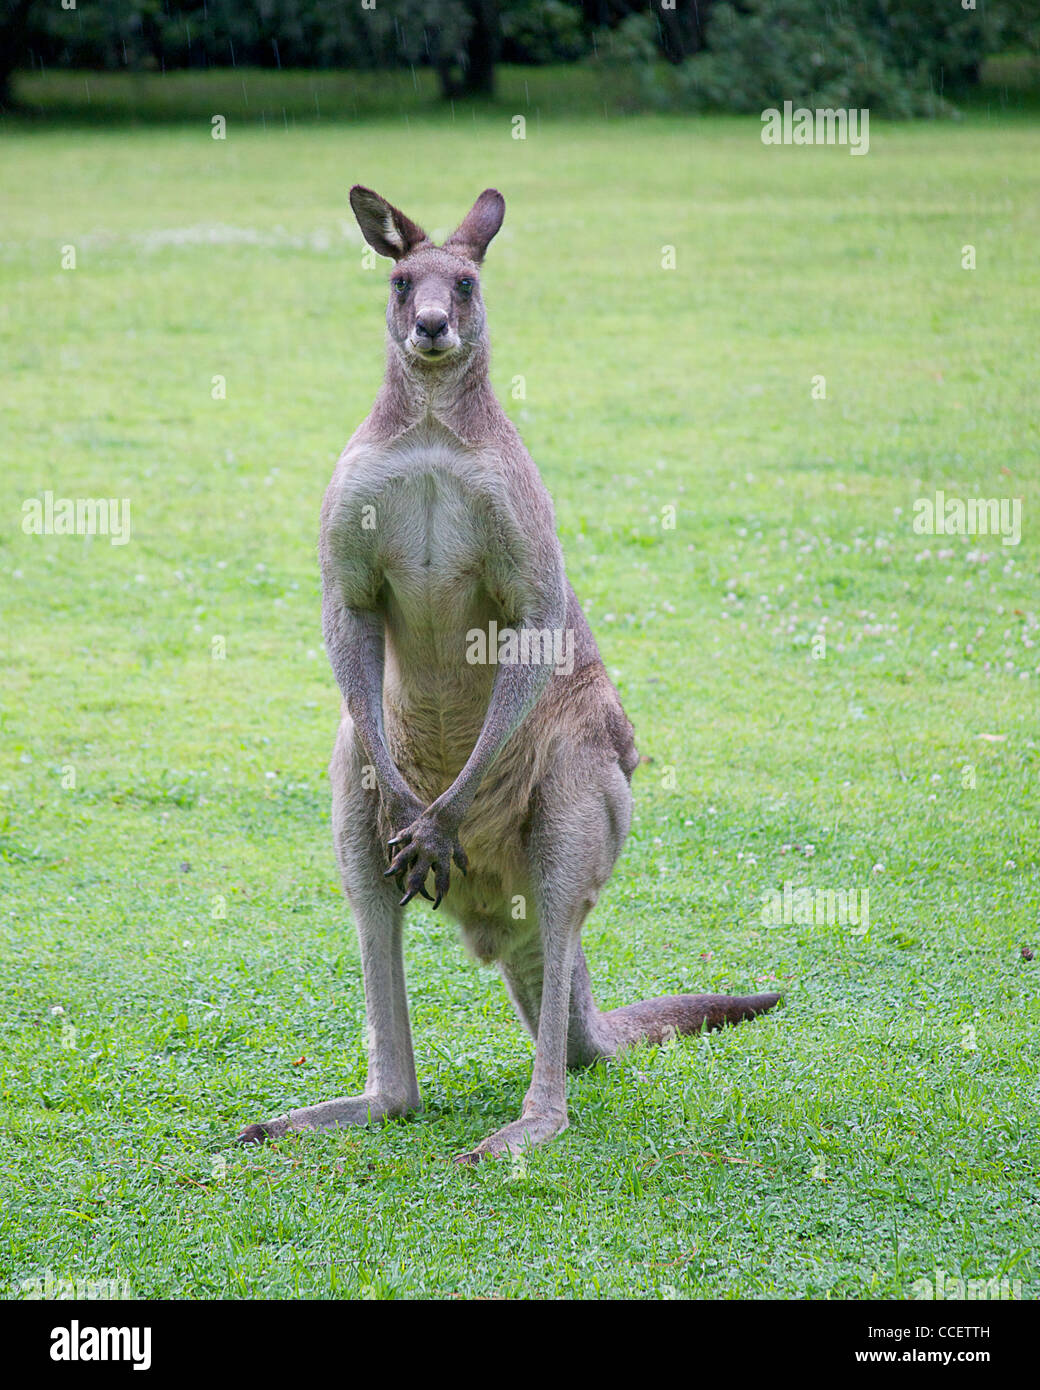 Kangourou mâle debout sur l'herbe Banque D'Images